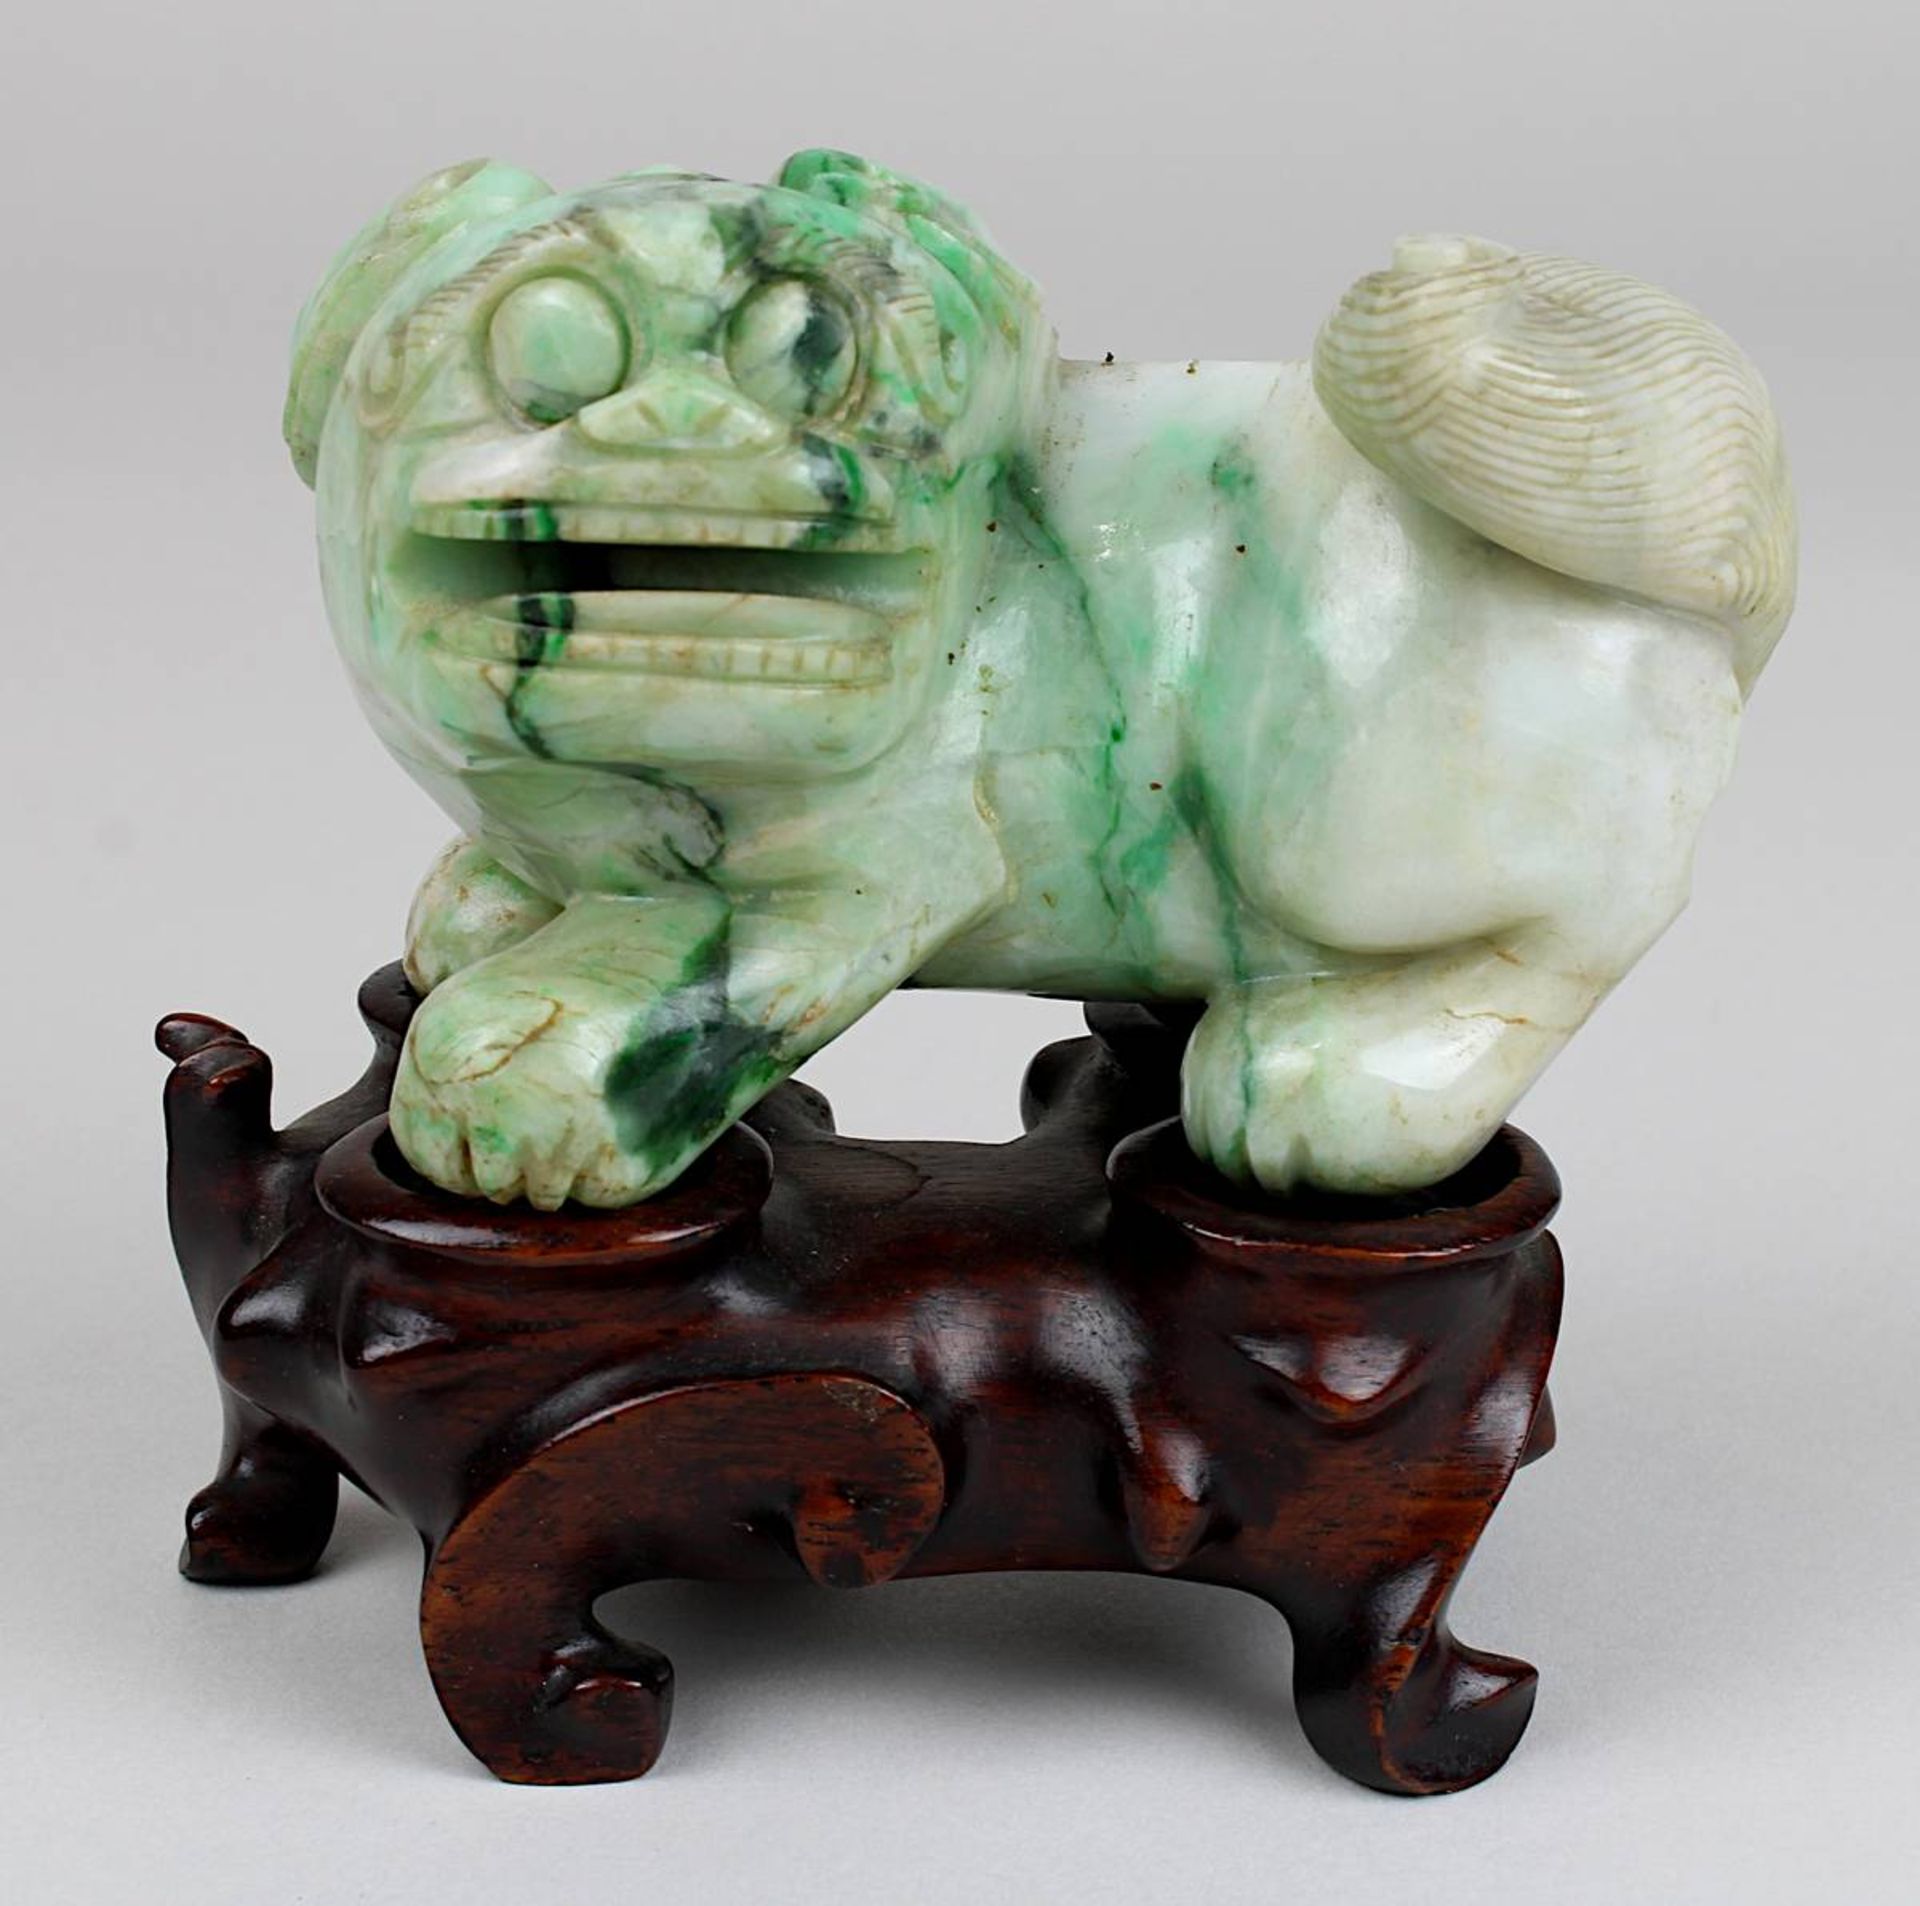 Chinesischer Fo-Hund, aus einem Stück grünweiß marmorierter Jade geschnitzt,  L 10 cm, H 7,5 cm,